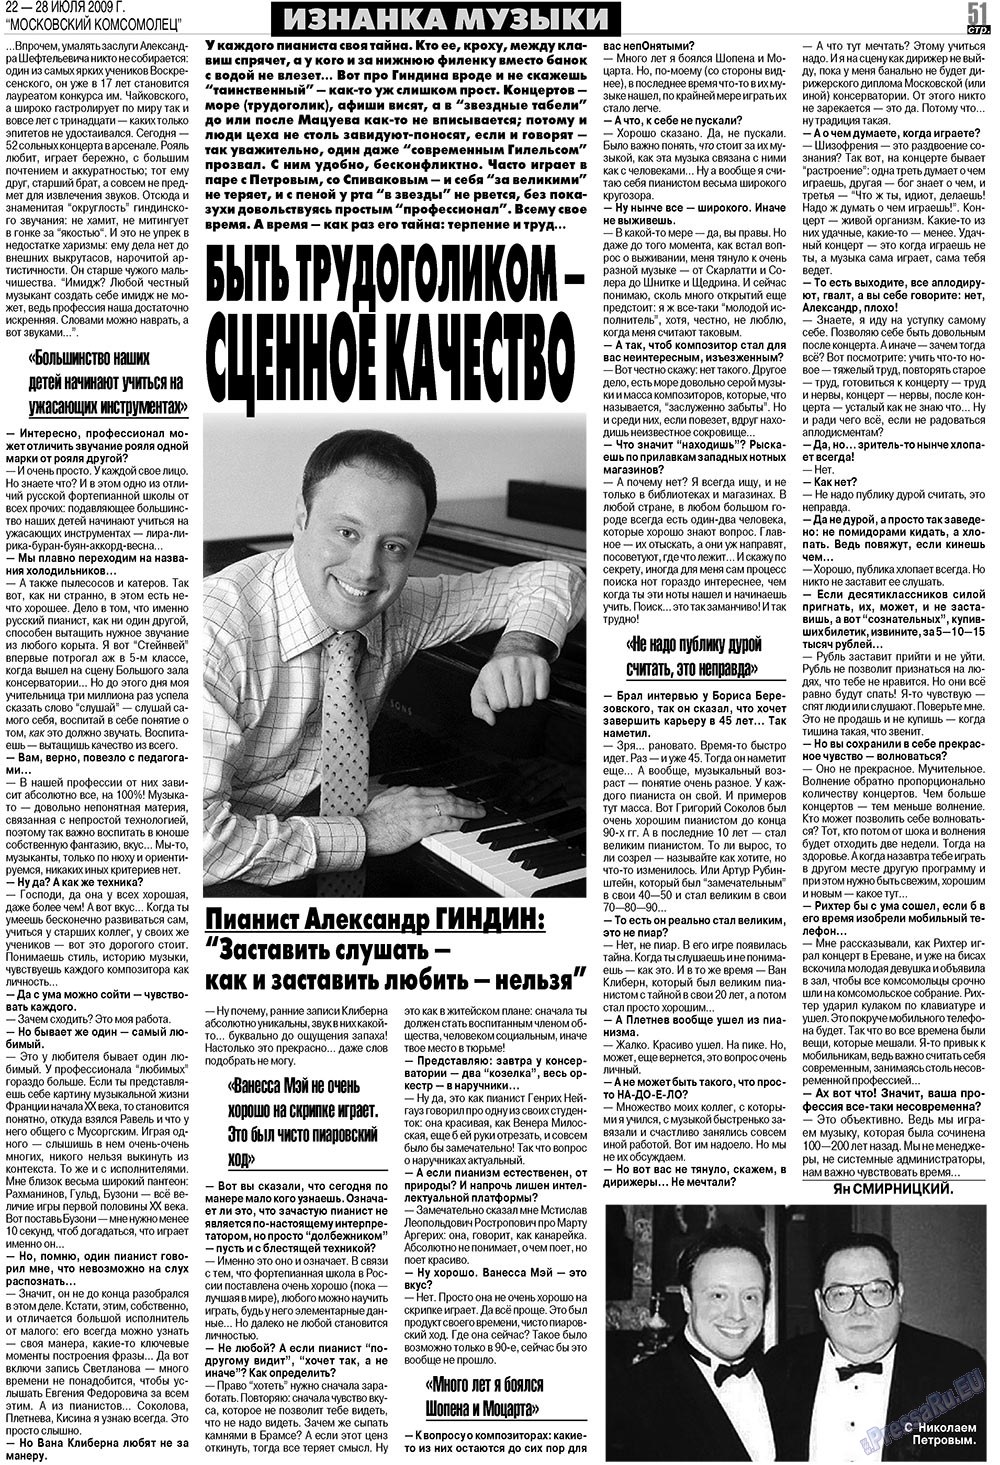 МК Испания, газета. 2009 №30 стр.51